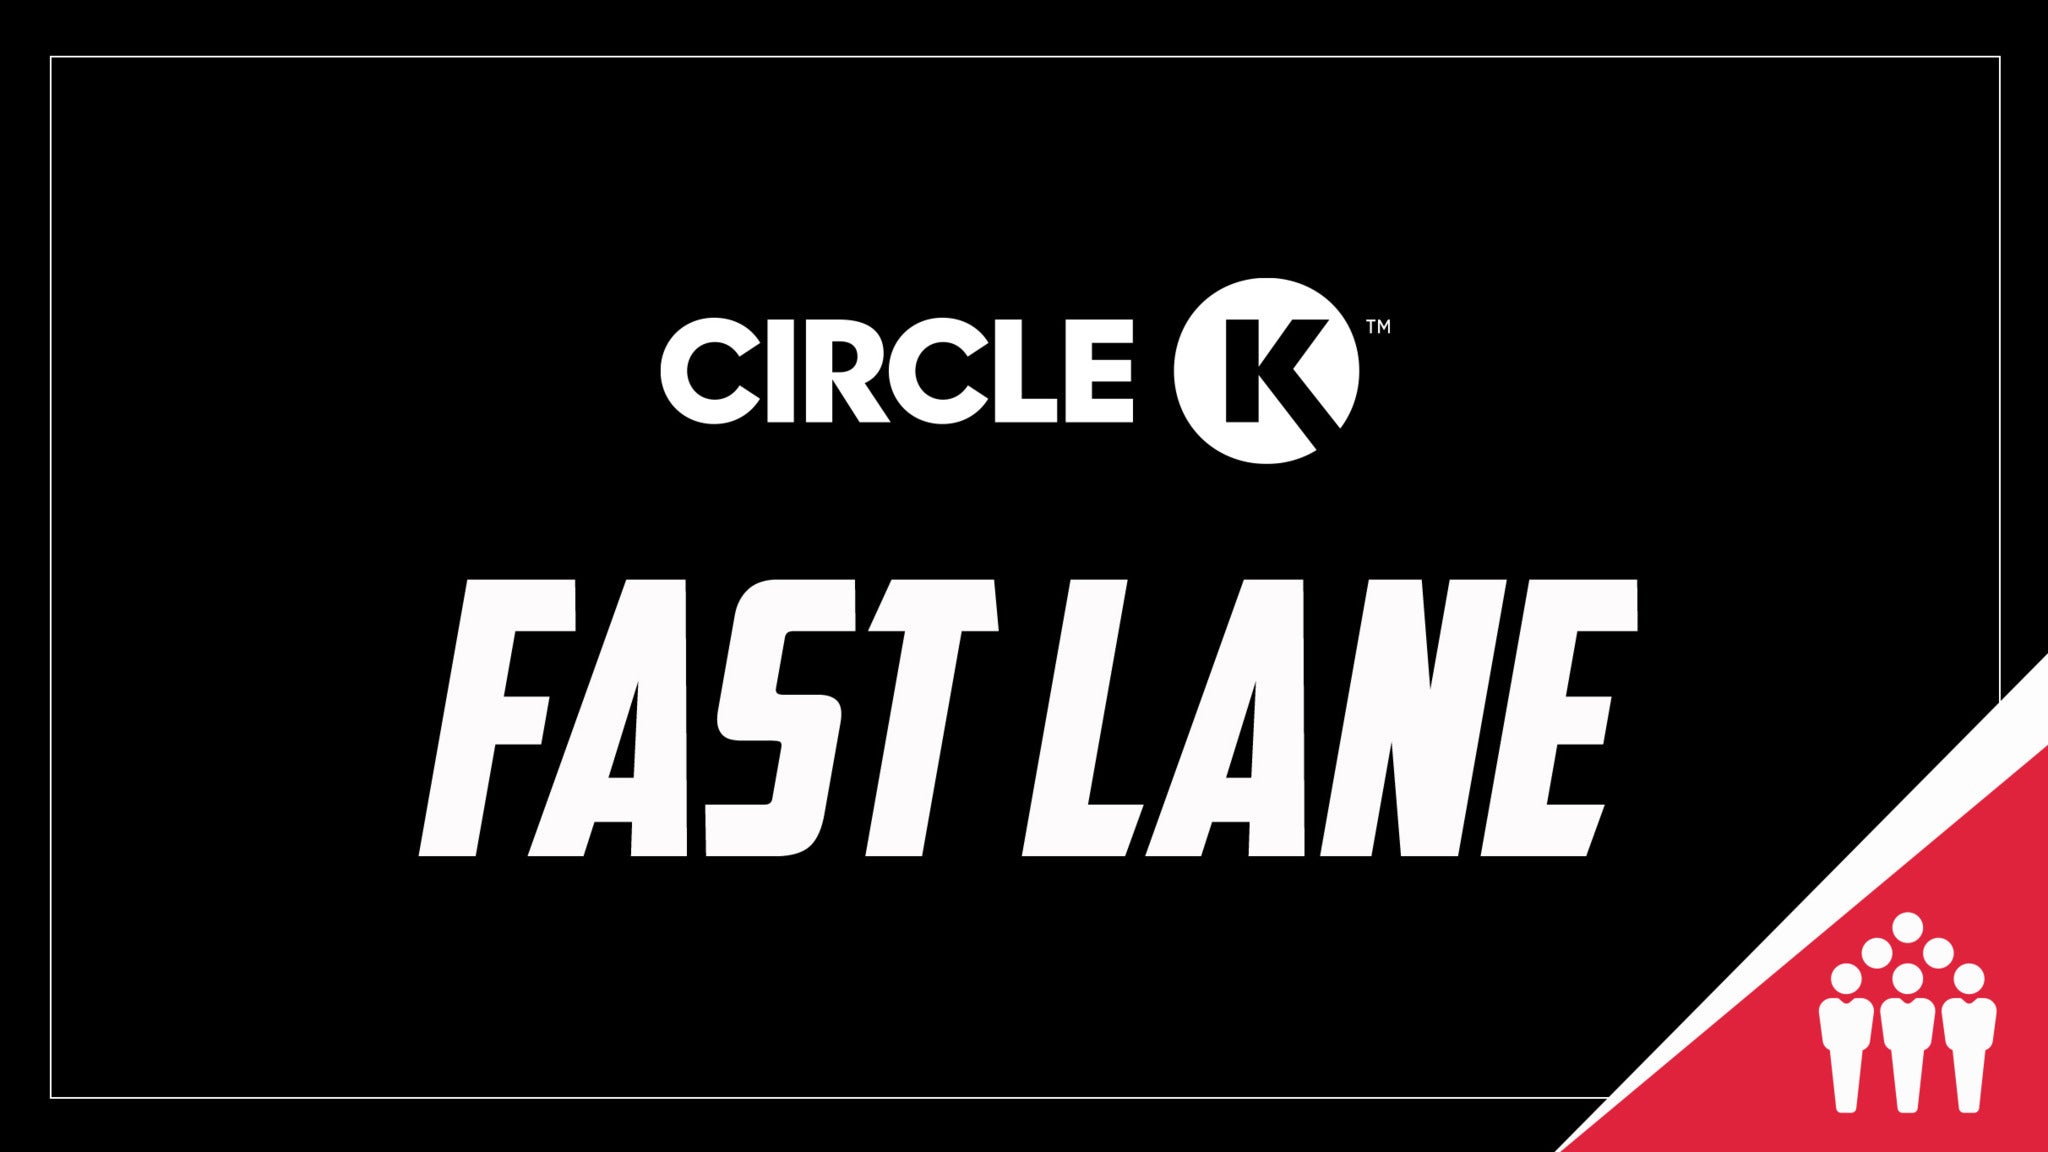 Circle K Fast Lane presale information on freepresalepasswords.com